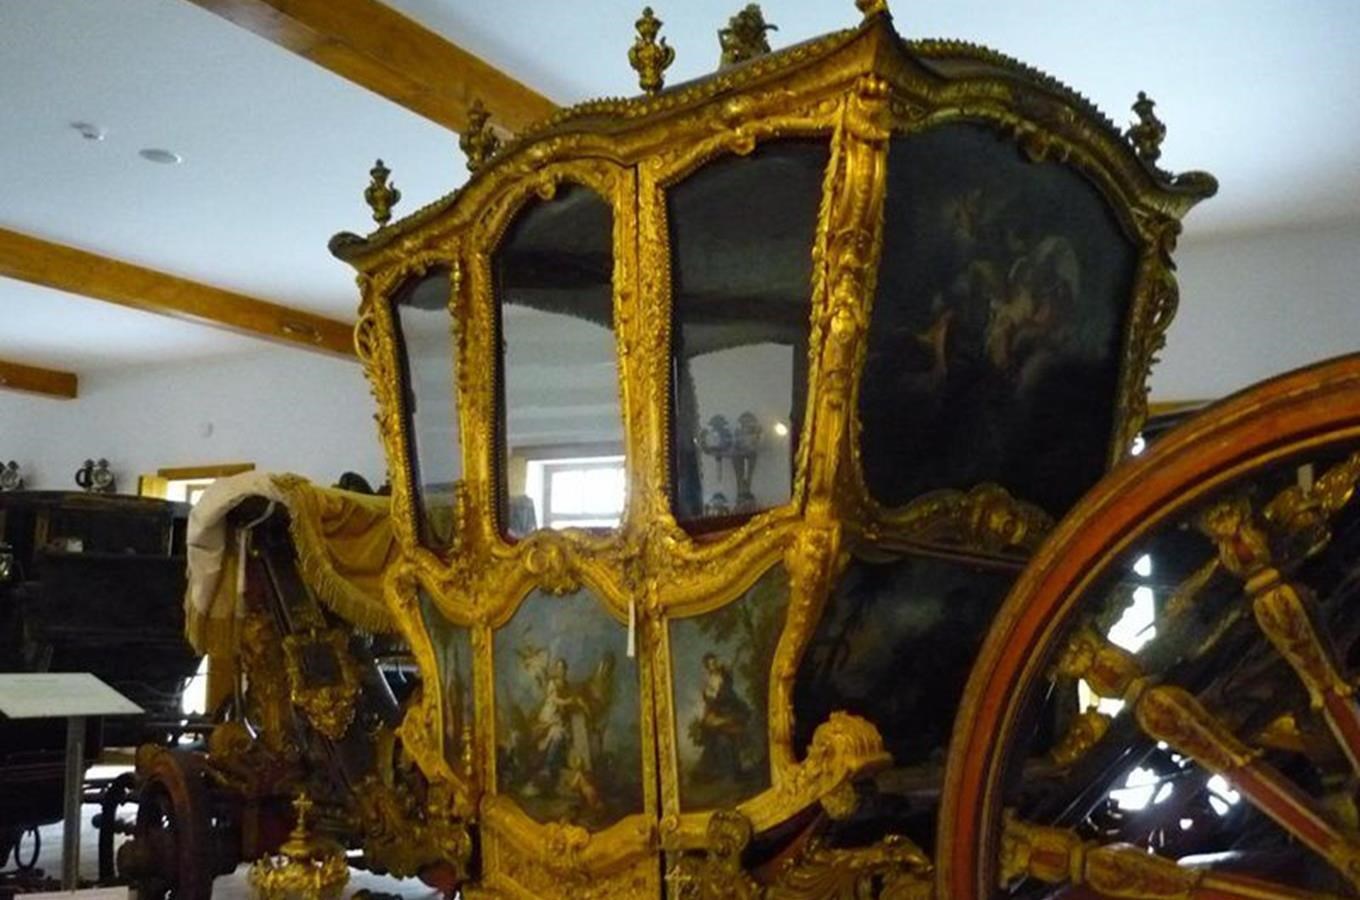 Muzeum historických kočárů v Čechách pod Košířem - největší muzeum kočárů v České republice